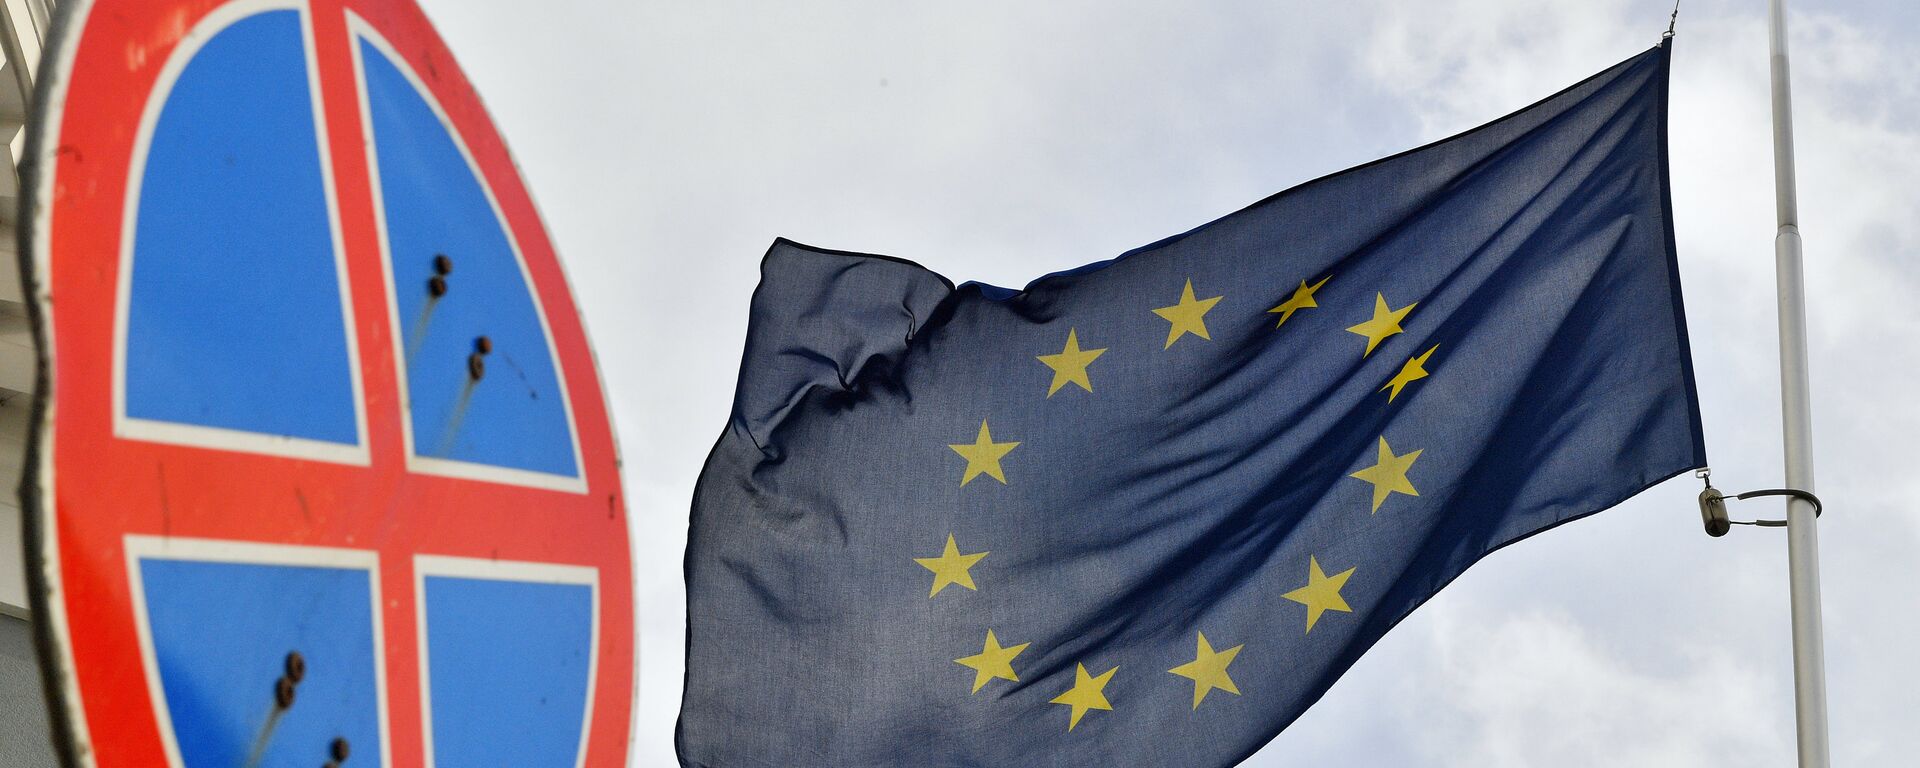 Флаг ЕС у здания представительства Европейского Союза в Москве. - Sputnik Latvija, 1920, 11.02.2021